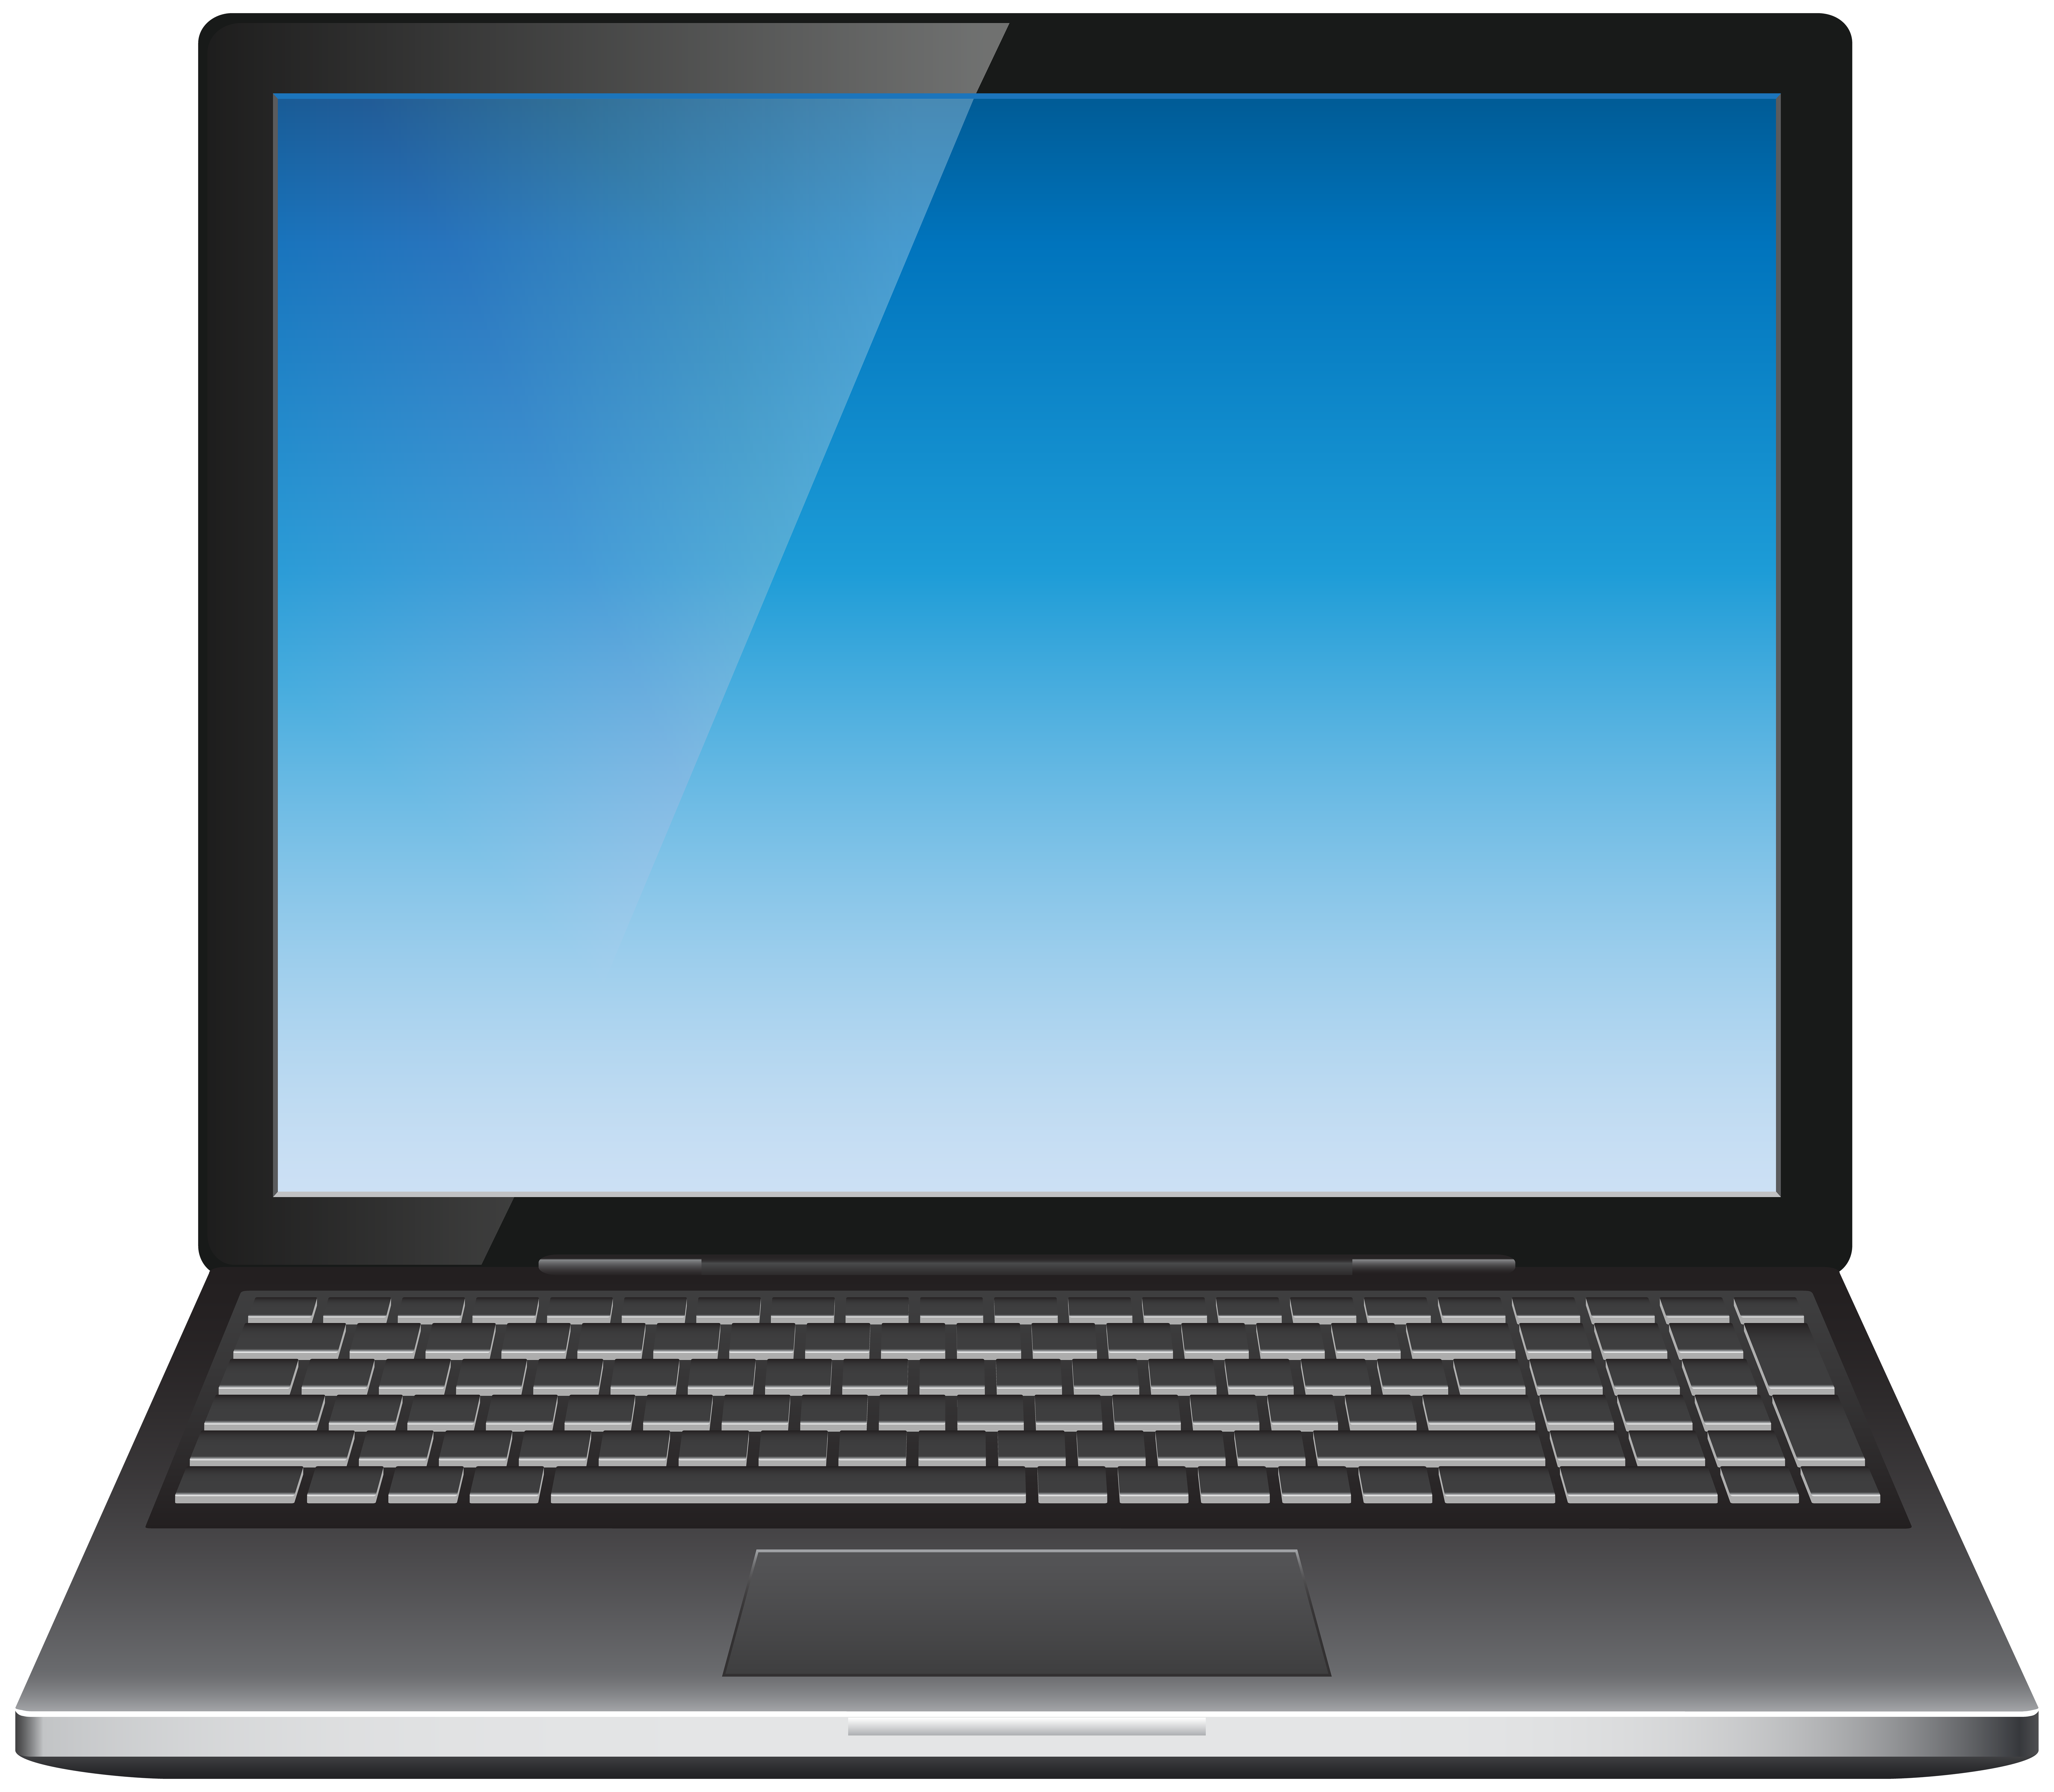 Картинка на монитор ноутбука. Ноутбук. Экран ноутбука. Ноутбук без фона. Монитор ноутбука.